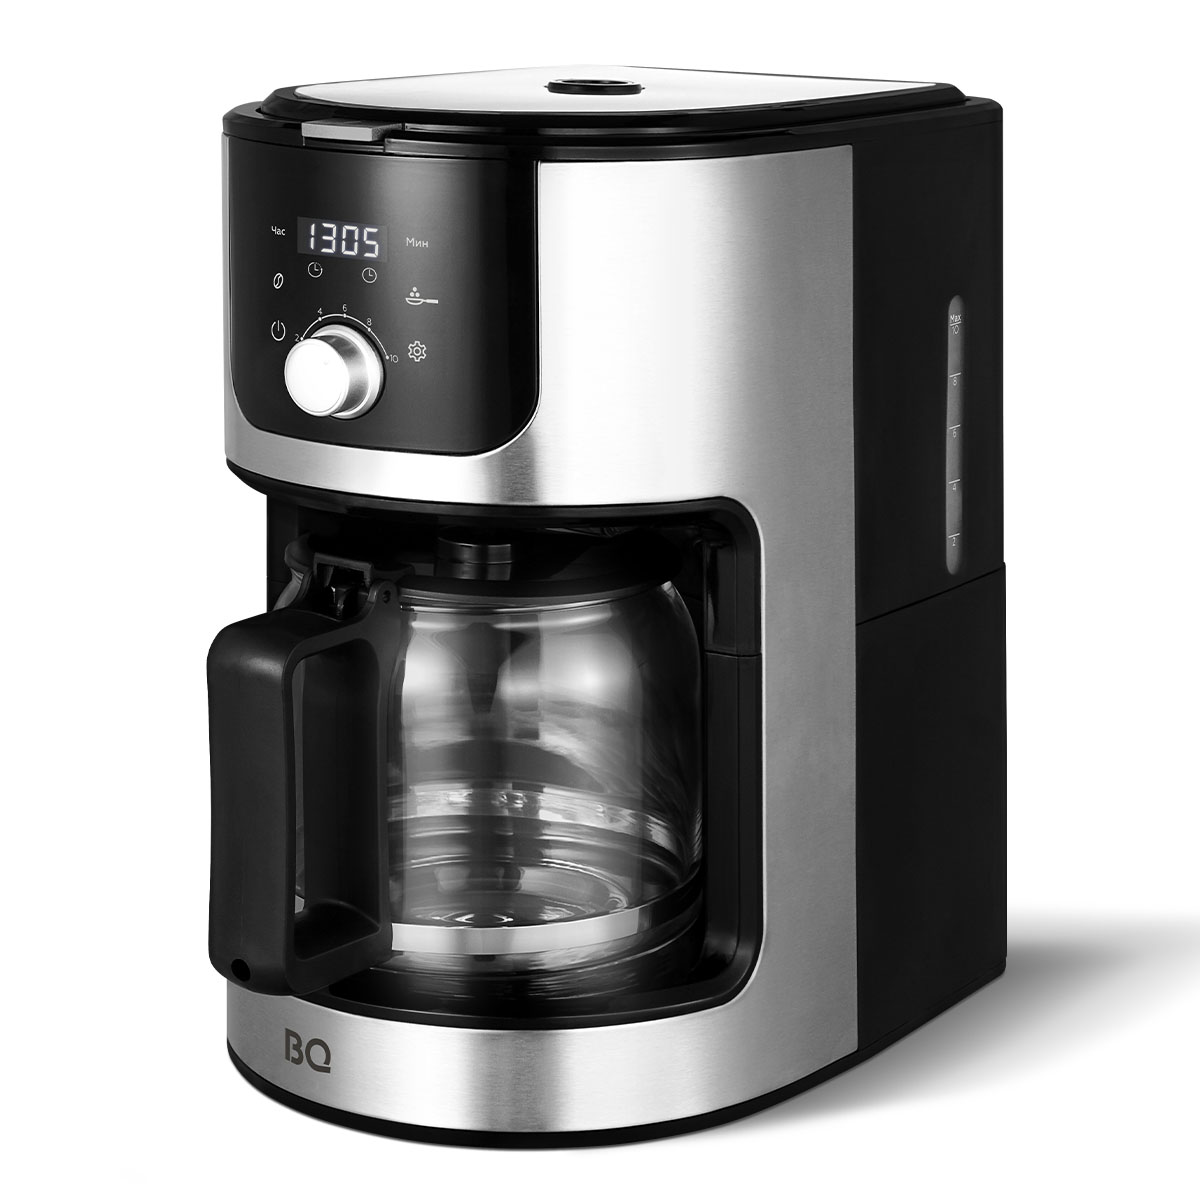 Кофеварка капельного типа BQ CM1010 серебристый, черный капельная кофеварка со встроенной кофемолкой bq cm1010 стальной